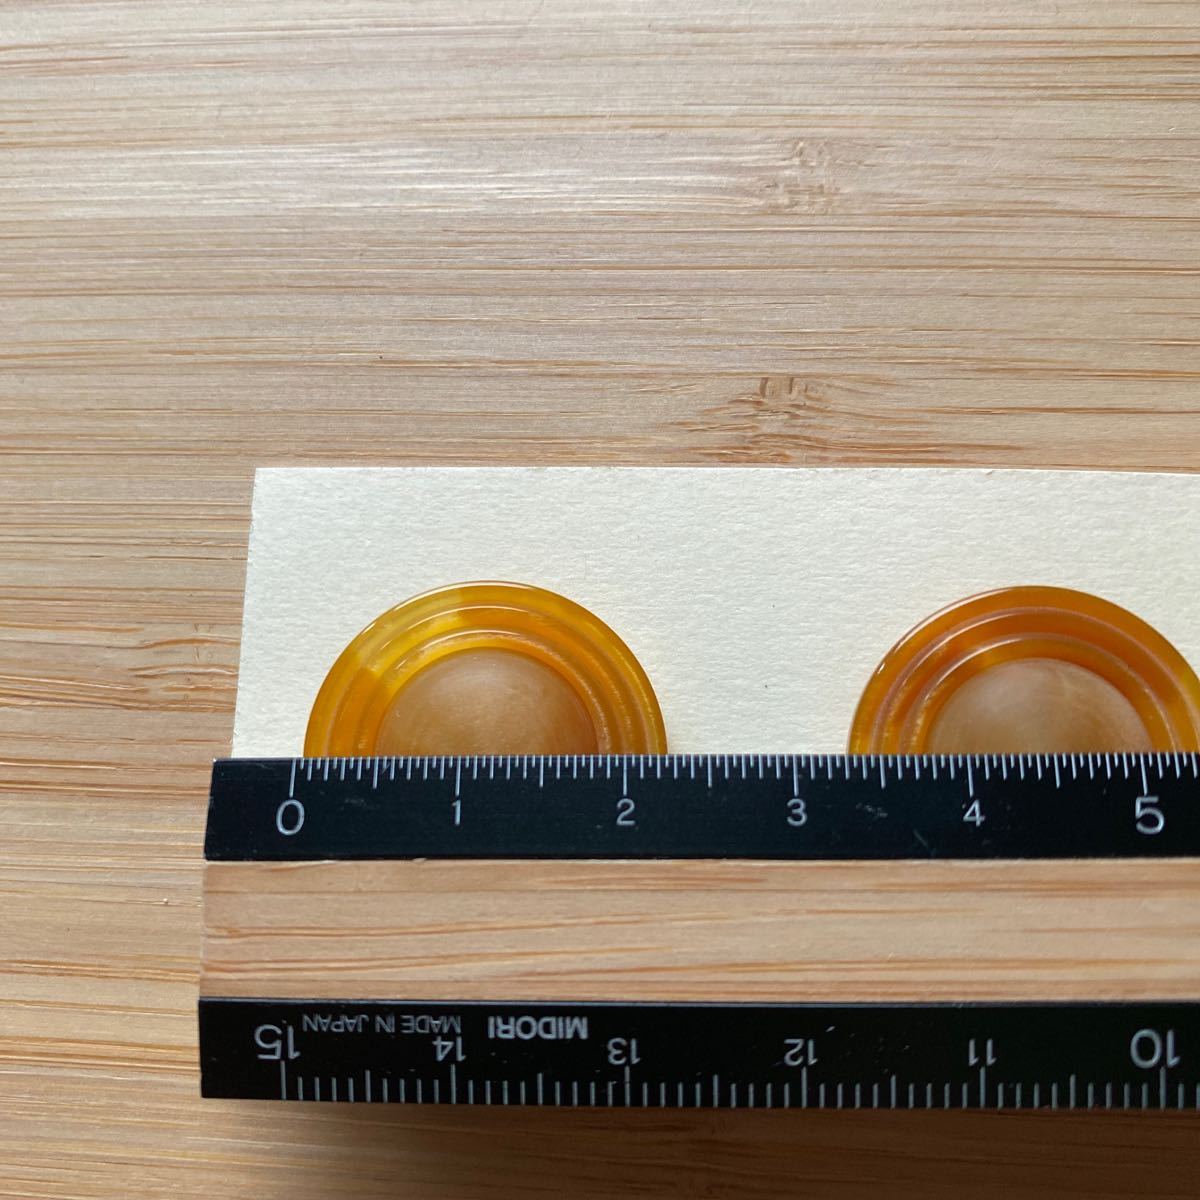 昭和レトロ イエロー系 和モダン モダン デッドストック ビンテージ 直径約23mm 60年代風(購入は80年代) シックスティーズ 60's buttonの画像5